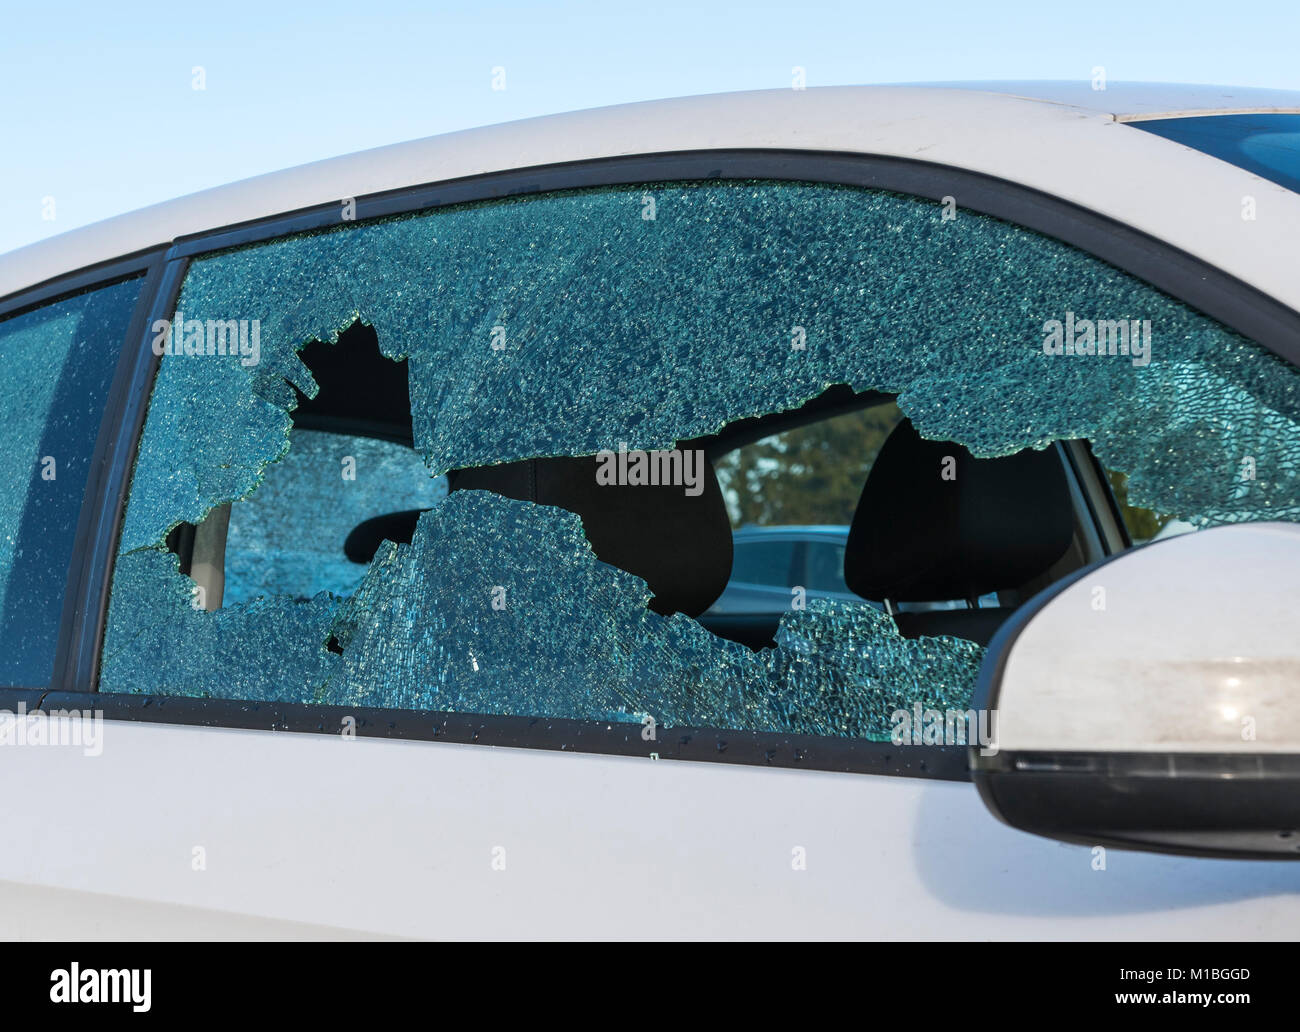 Soggetto ad atti vandalici con una vettura rotto vetro rotto. Foto Stock